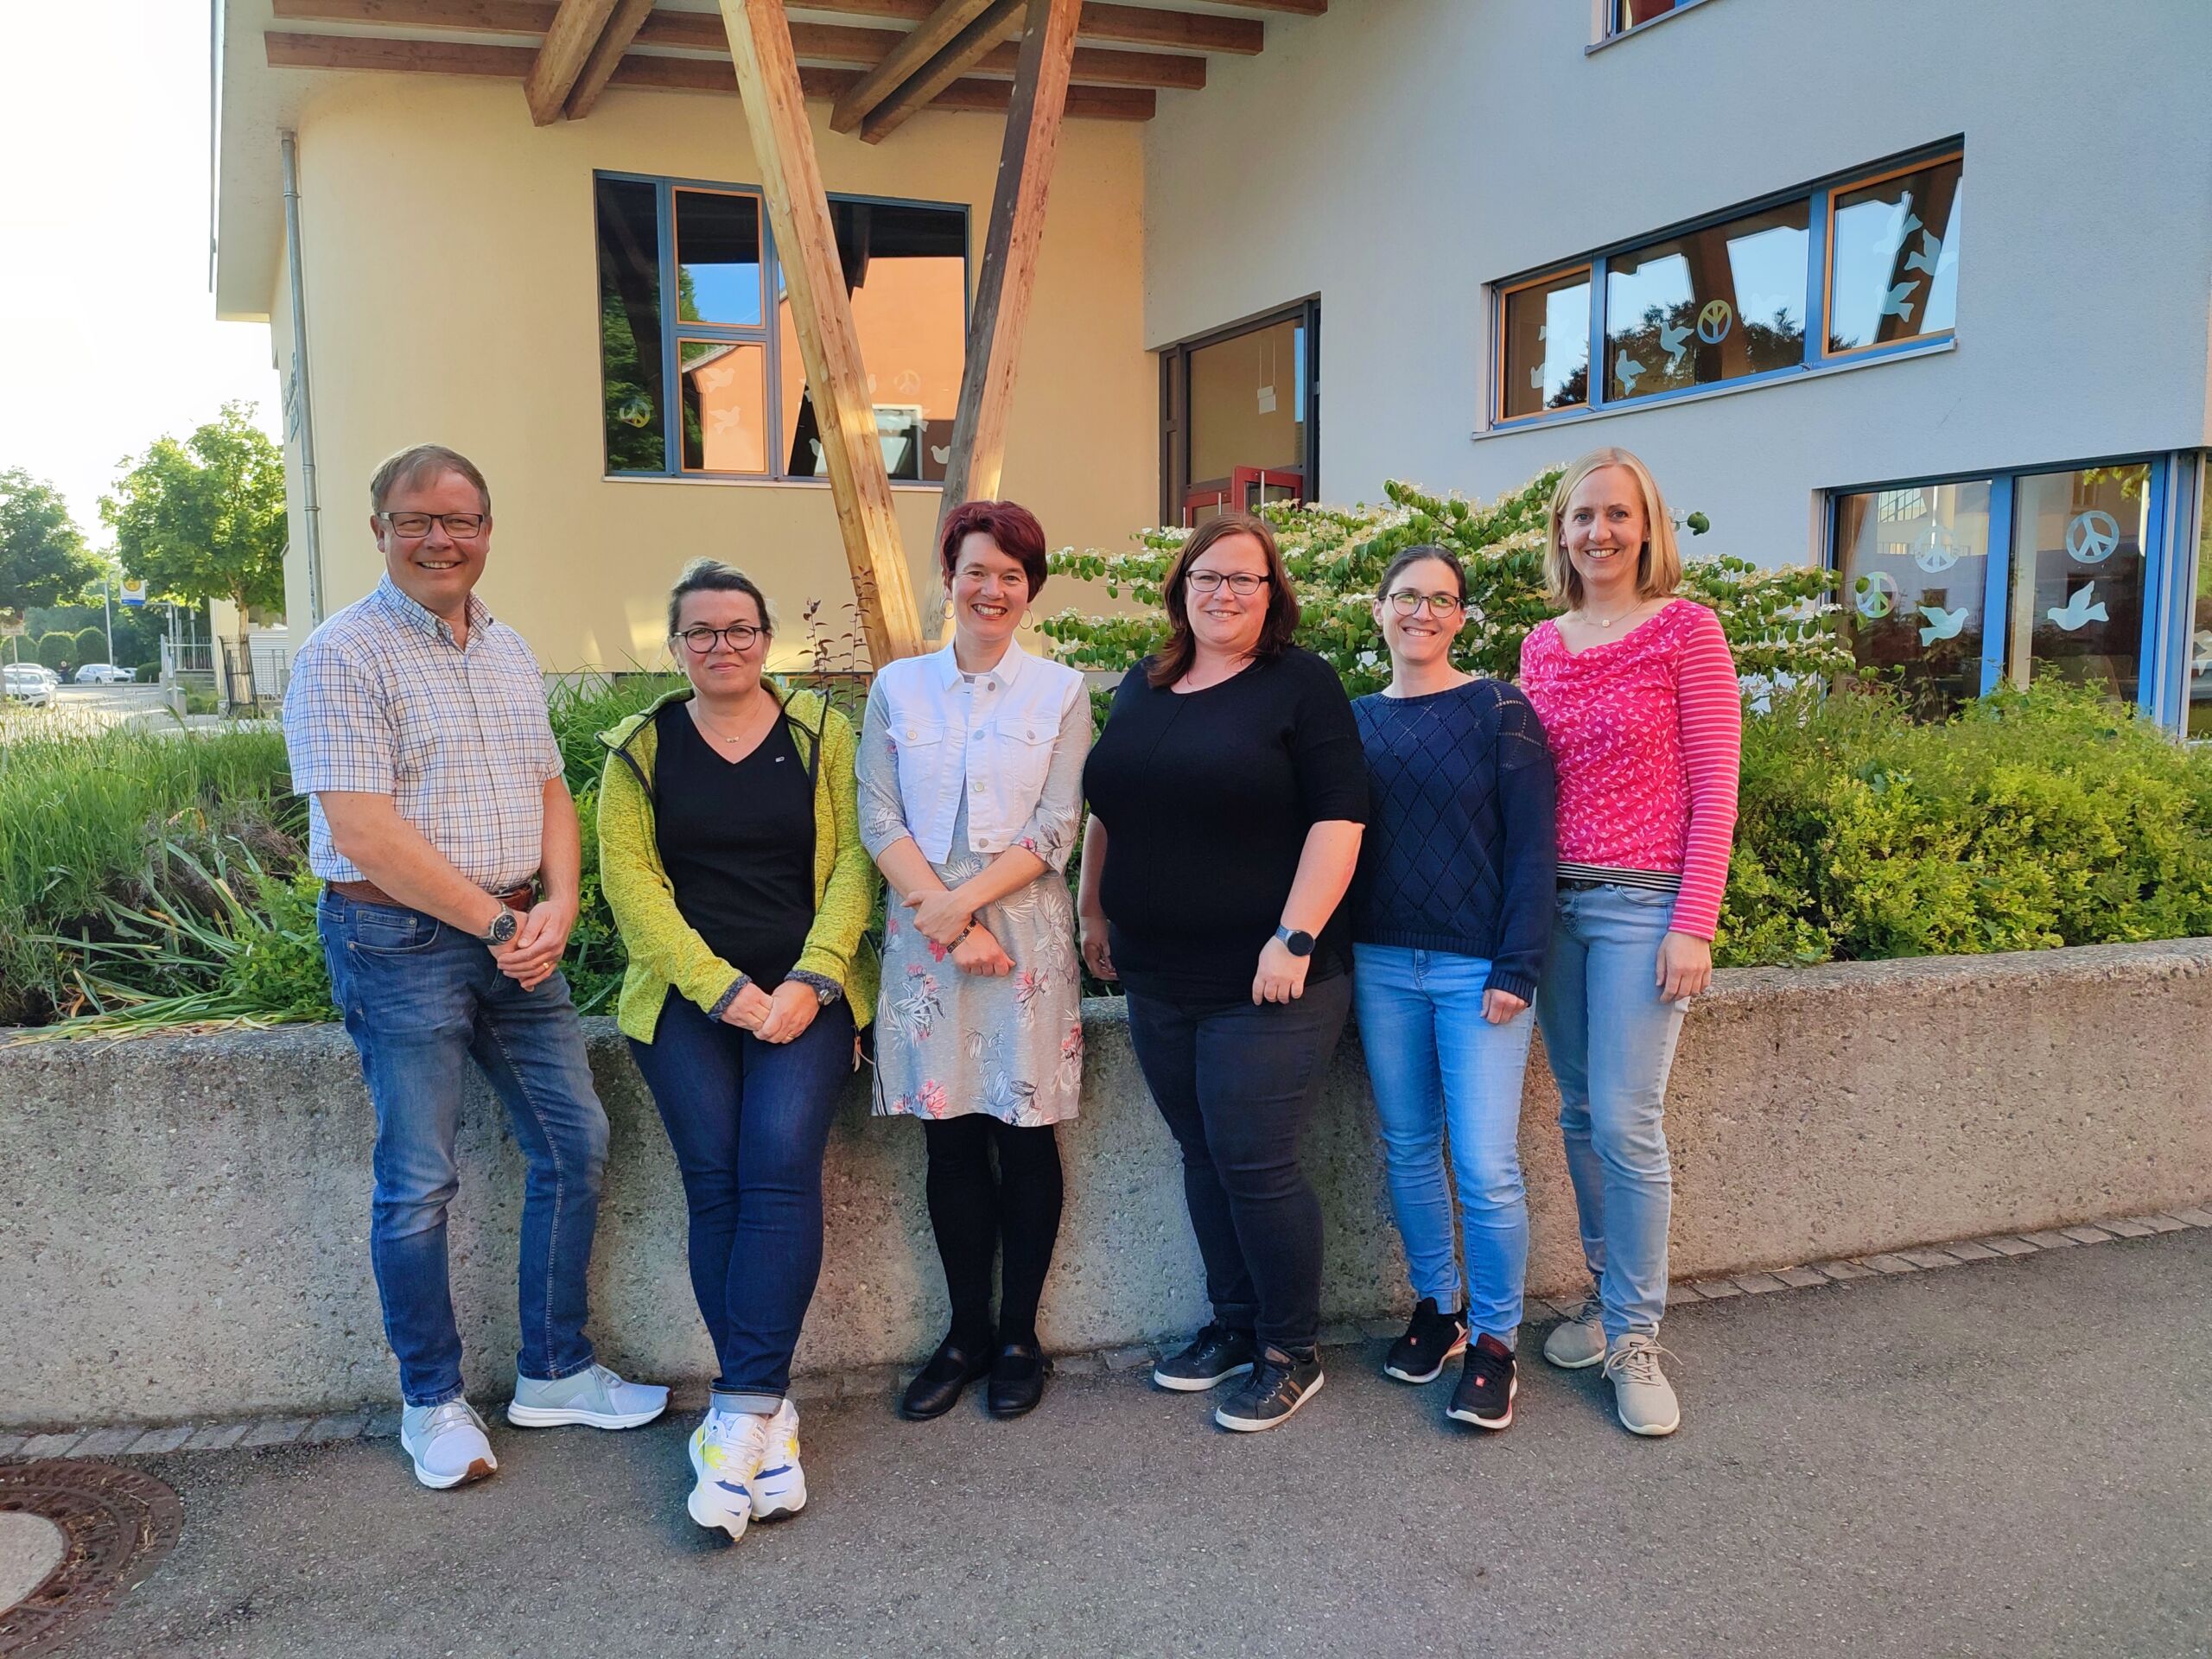 Die neue Vorstandschaft von links: Thilo Philipp, Vesna Hensler, Anita Müller, Natascha Weidler, Stephanie Palkus und Berit Benkert-Utz, auf dem Bild fehlt Nicole Solbeck.